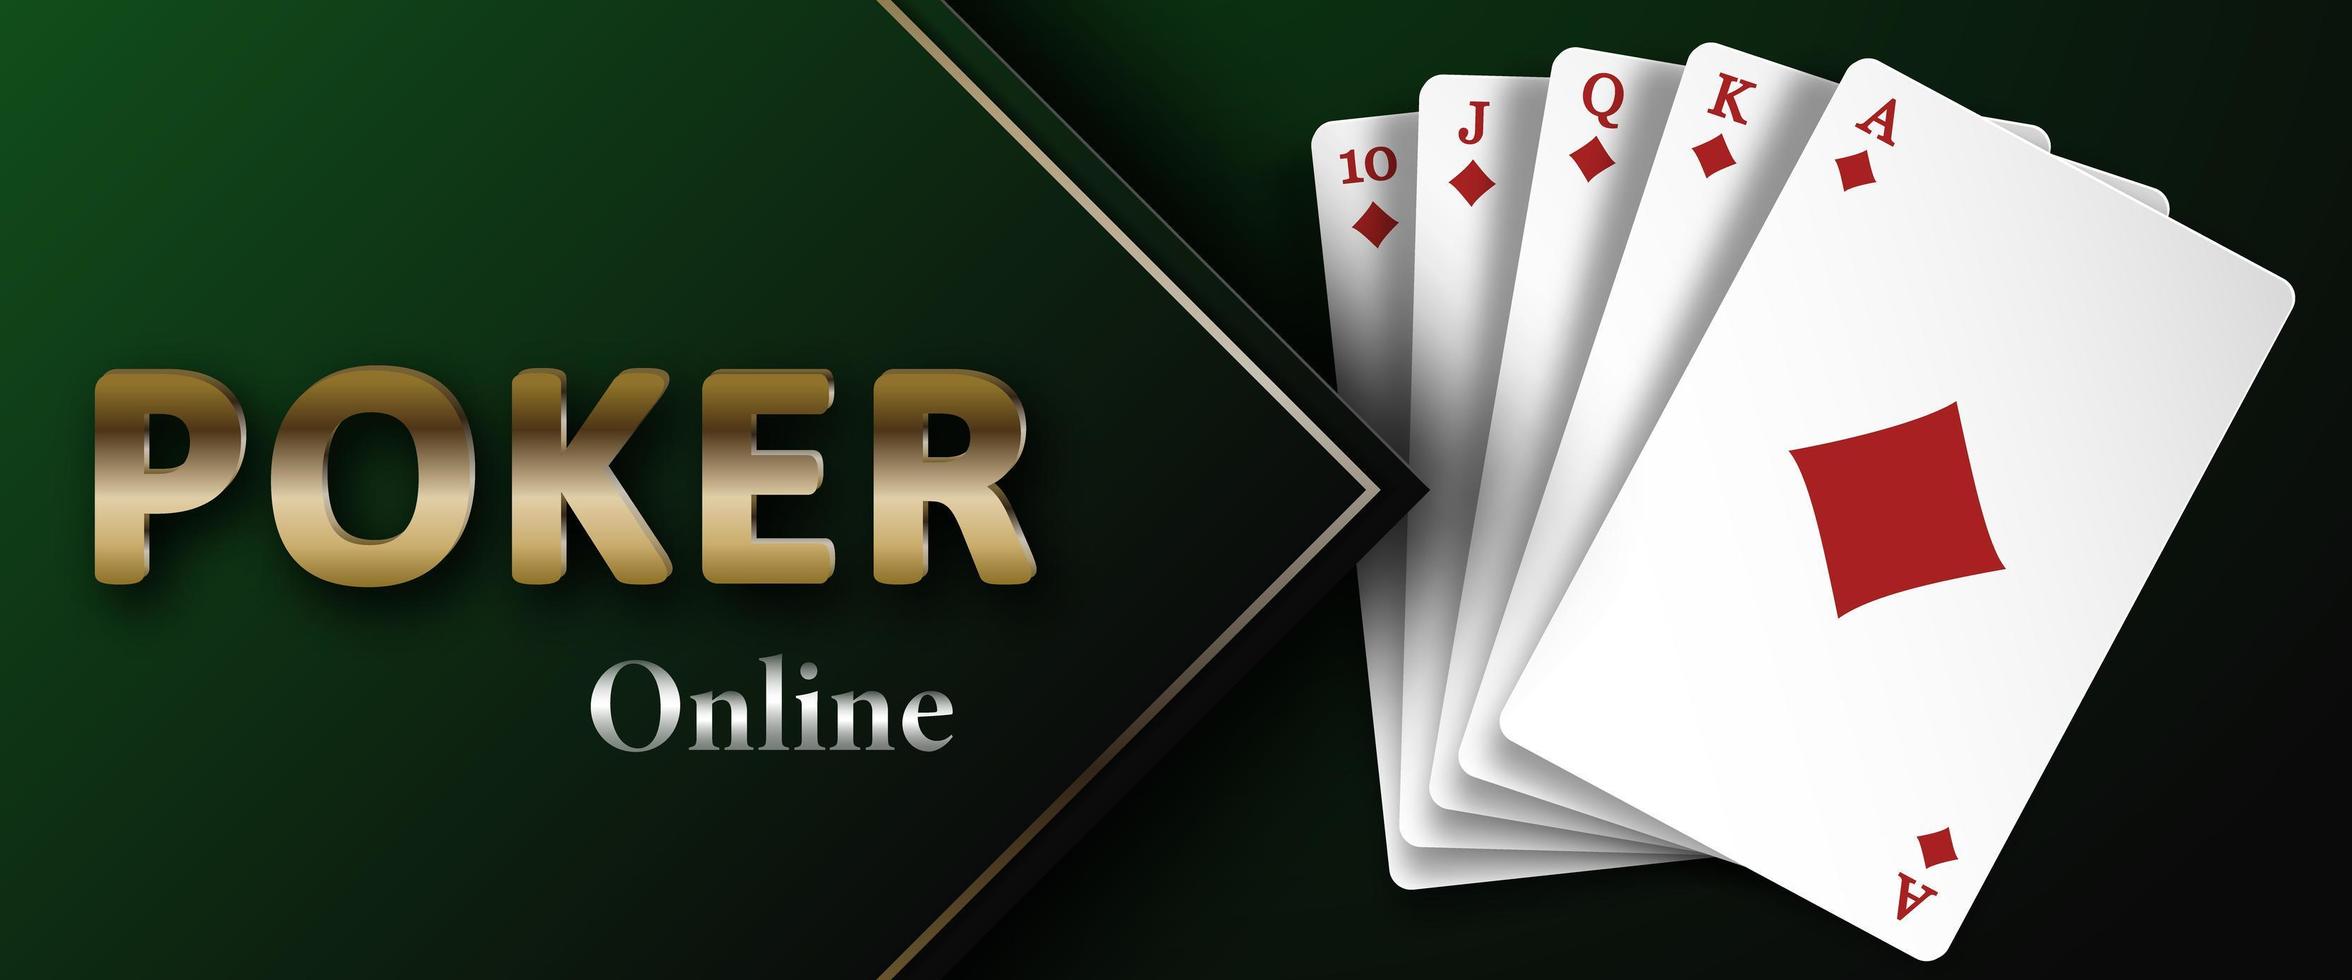 poker online em um fundo verde escuro e royal flush do naipe de diamantes. plano de fundo para publicidade de cassino, pôquer, jogos de azar. ilustração vetorial. vetor